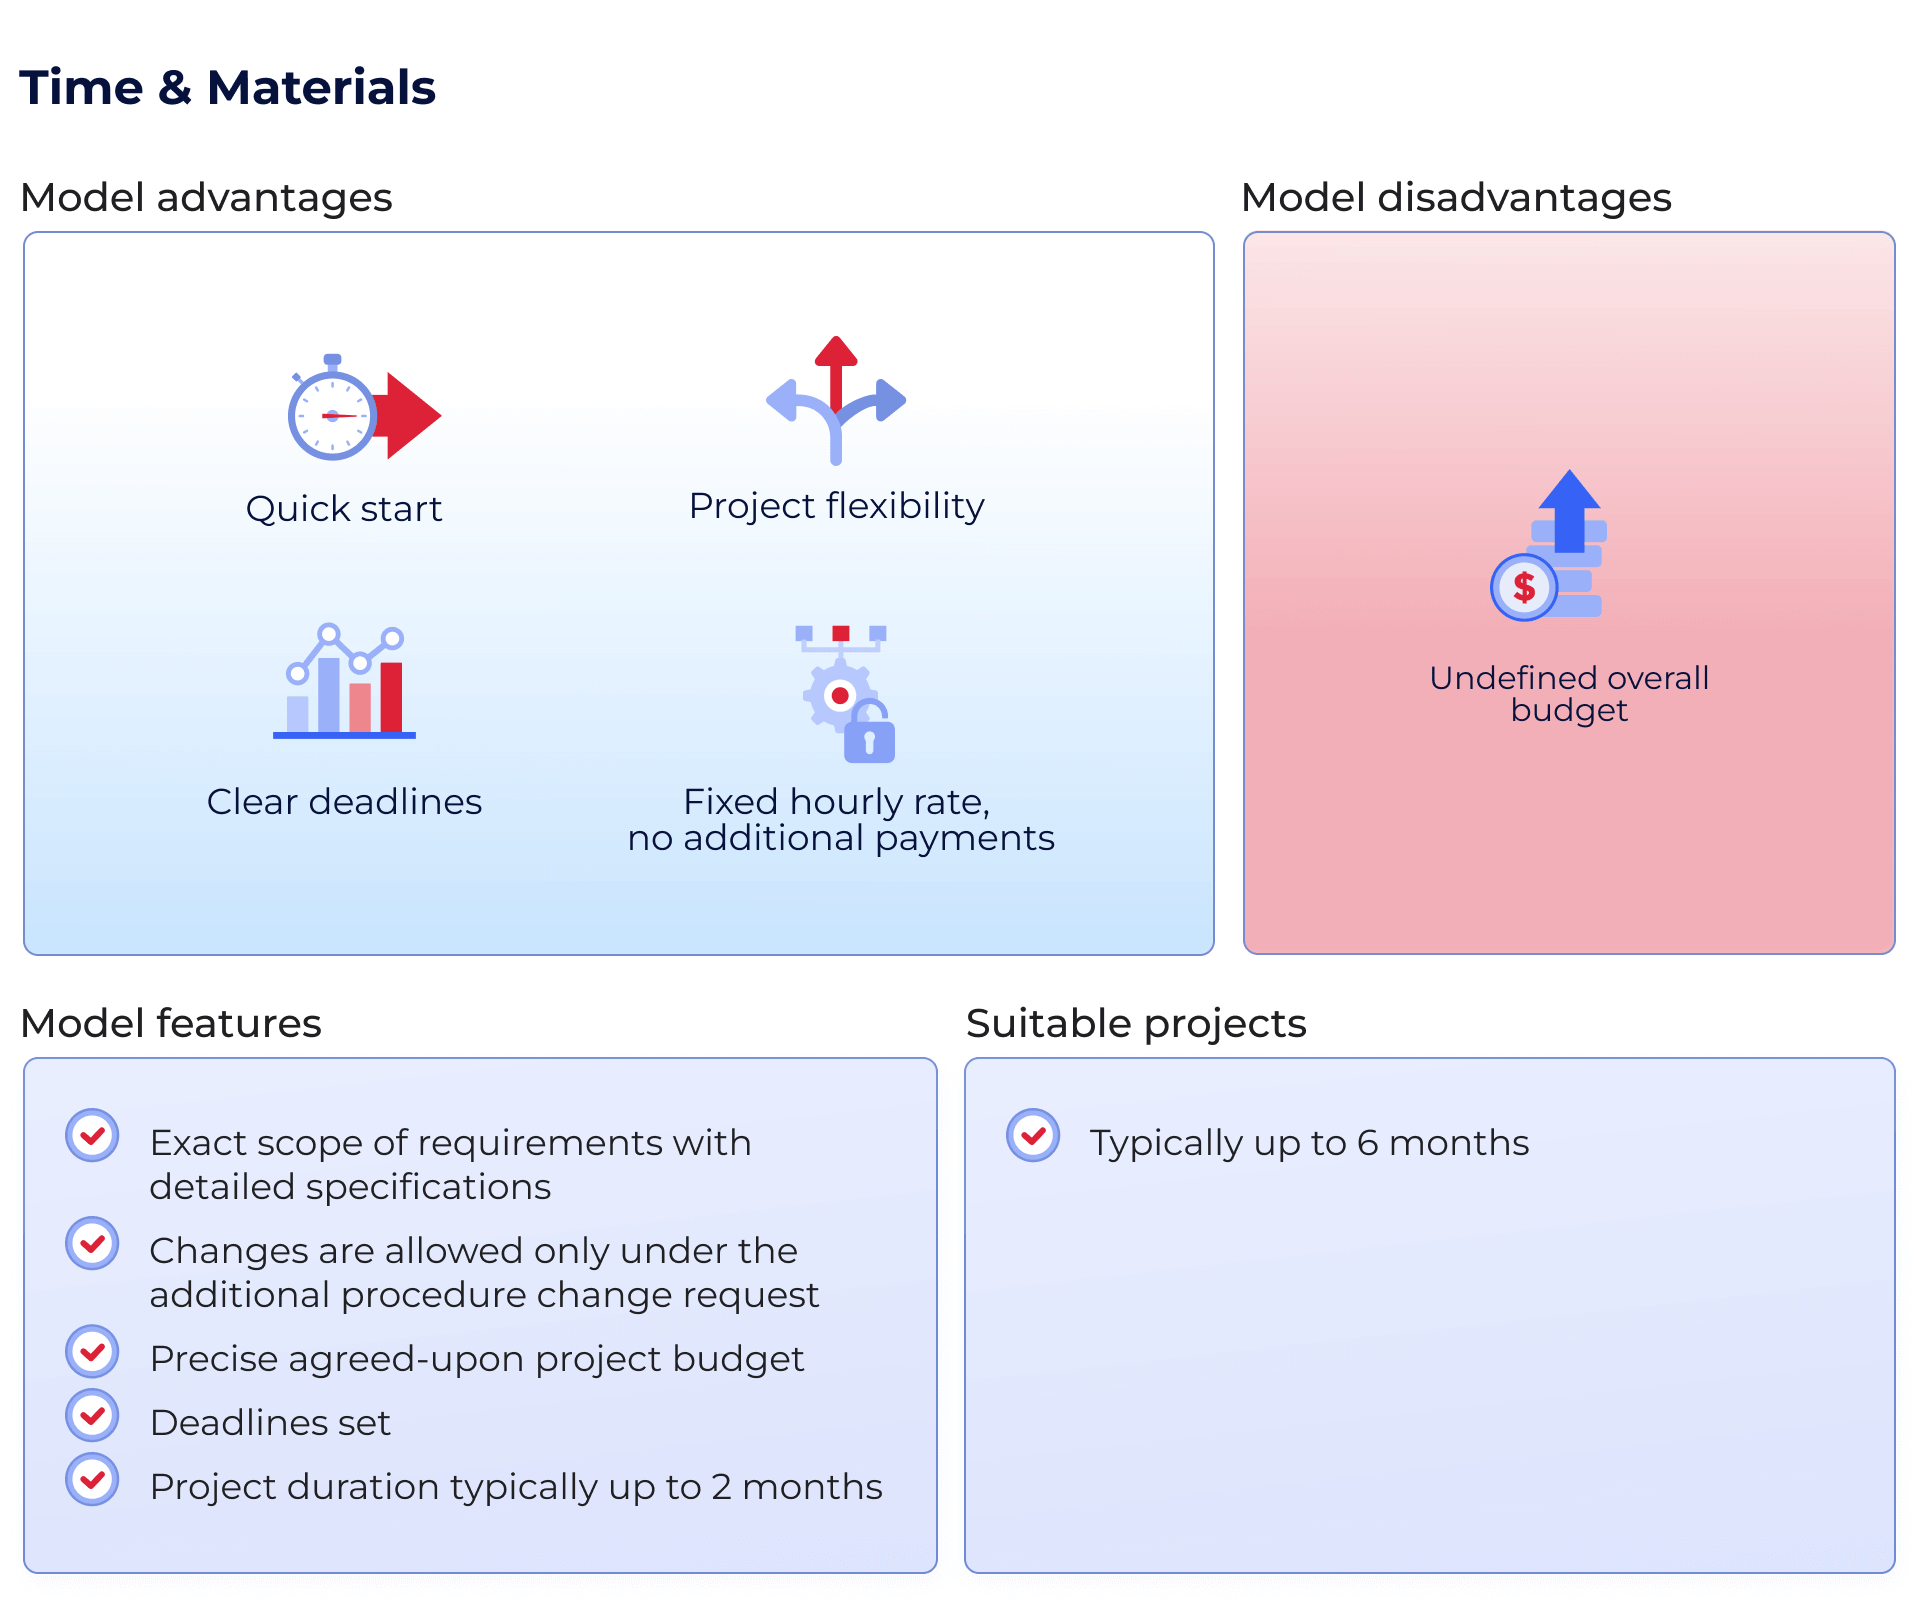 Time & Materials model customer Memo